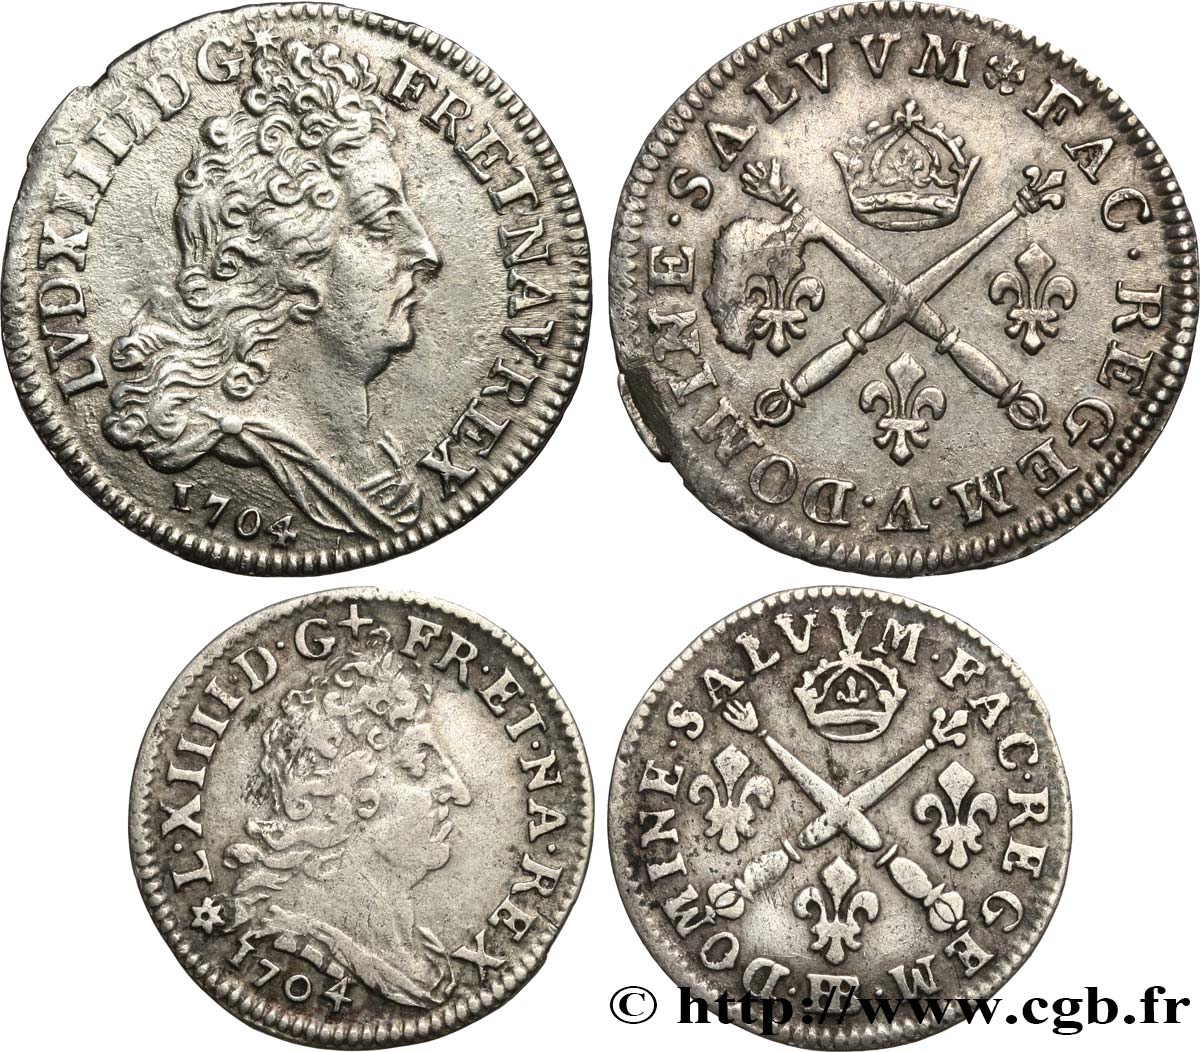 LOUIS XIV  THE SUN KING  Lot de 2 monnaies royales en argent 1704 Ateliers divers BB